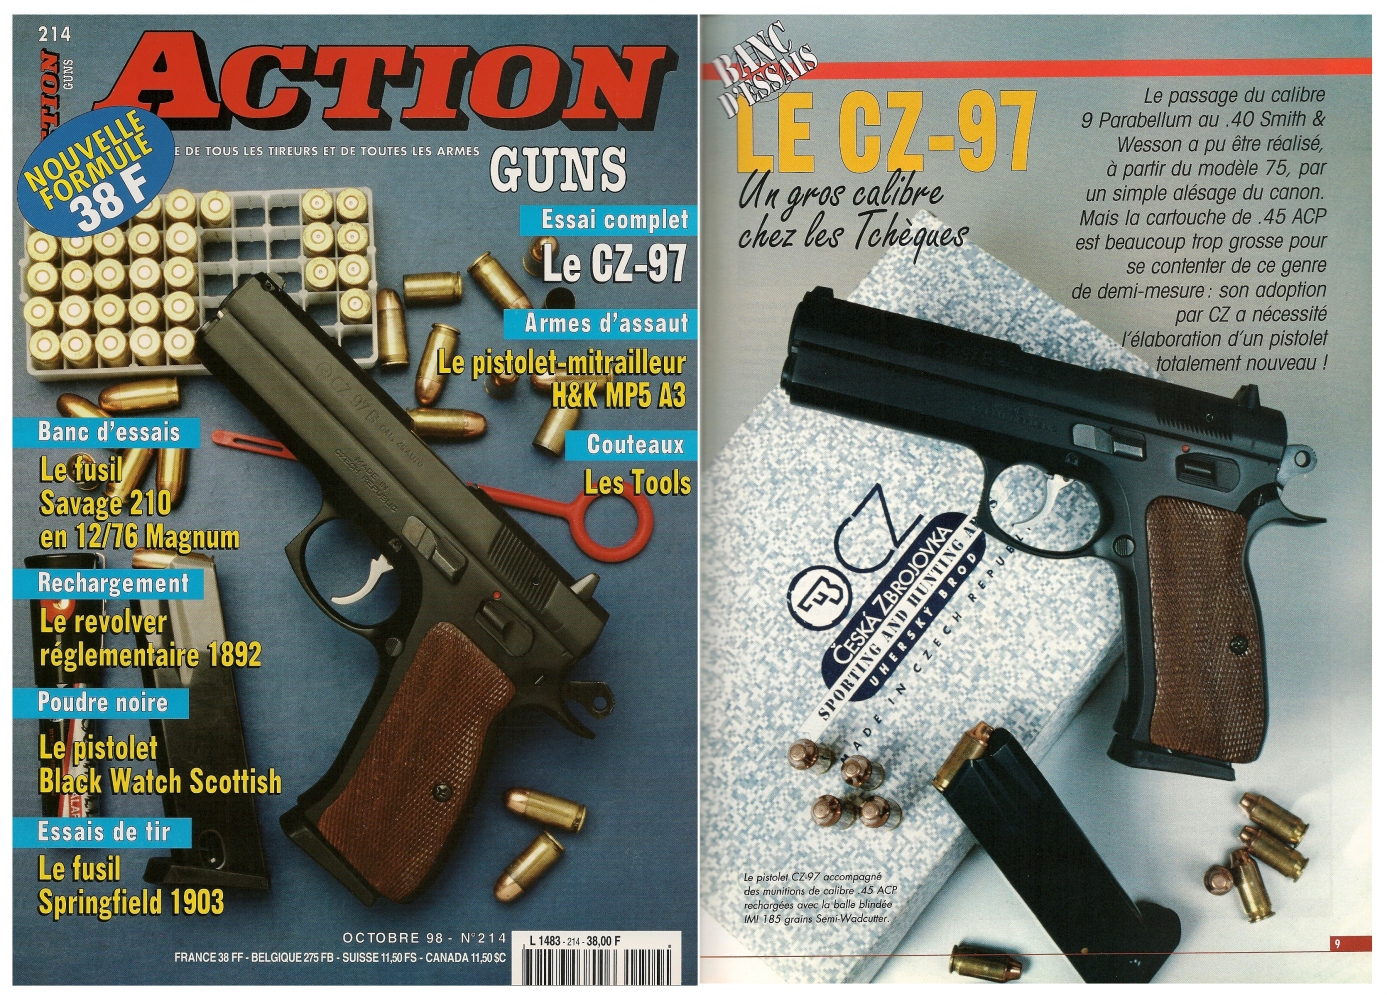 Le banc d’essai du pistolet CZ 75 B en calibre .45 ACP a été publié sur 7 pages dans le magazine Action Guns n°214 (octobre 1998)